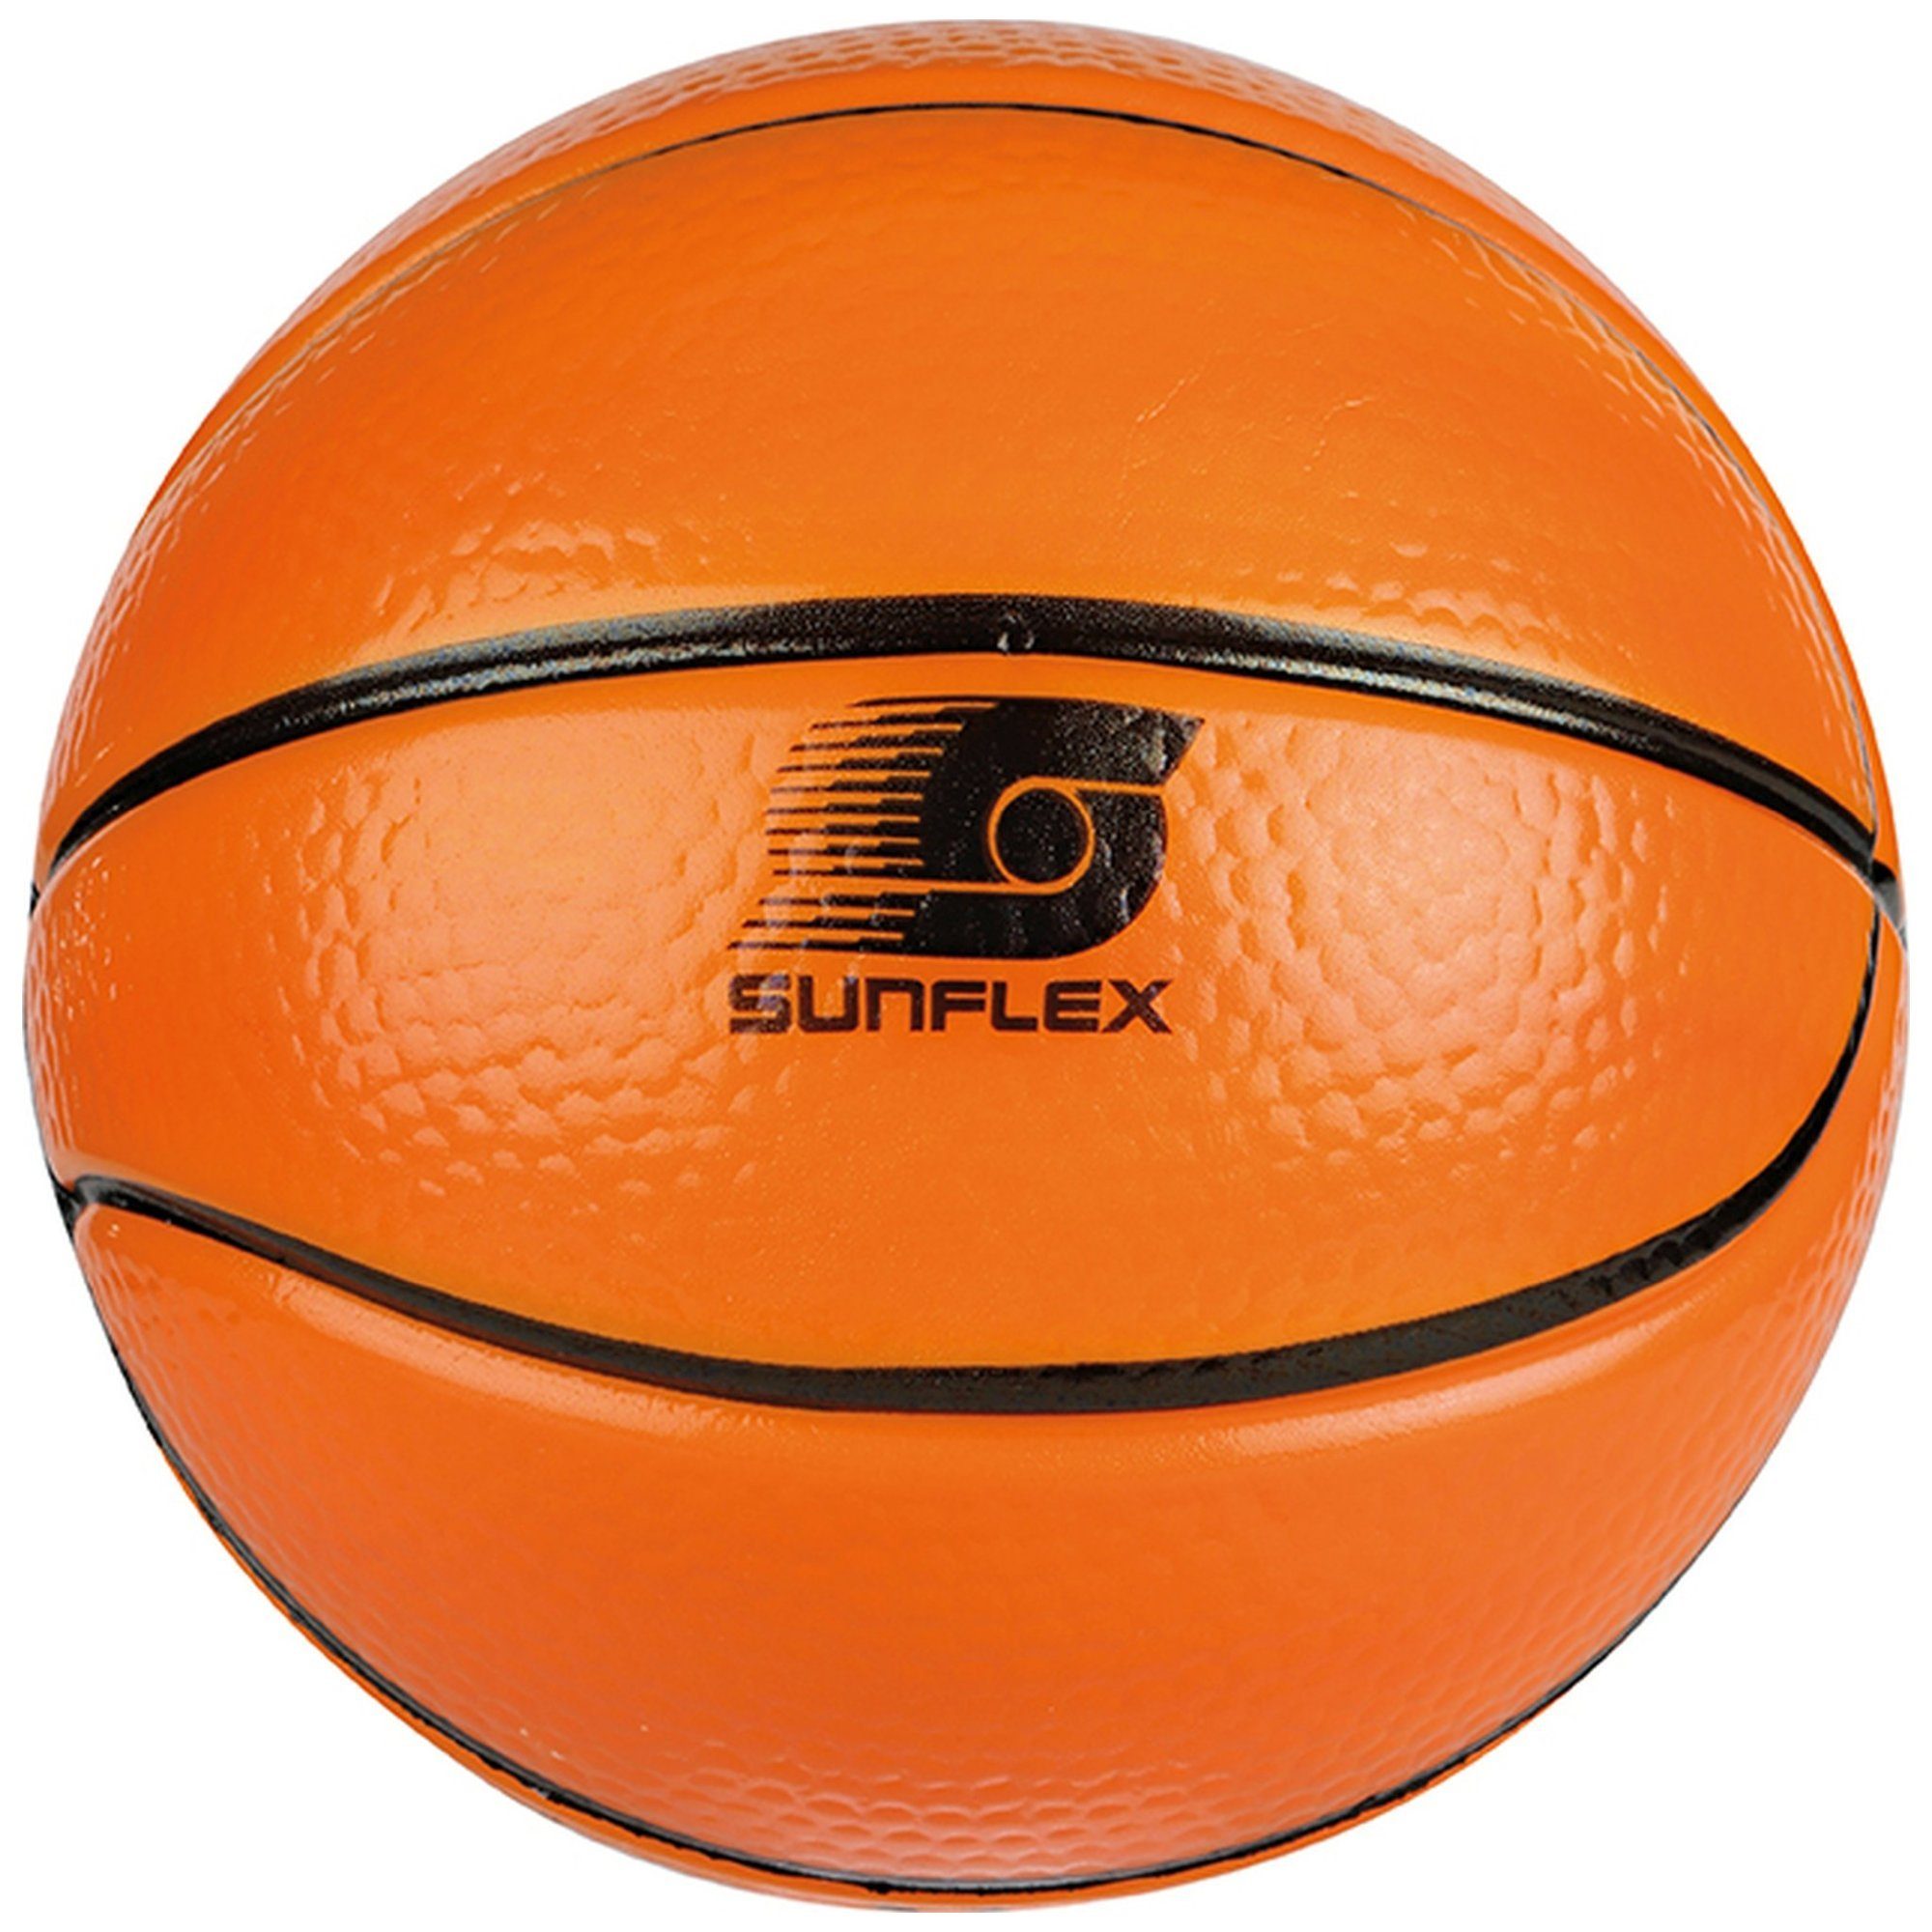 Basketball Softball sunflex Sunflex Basketball